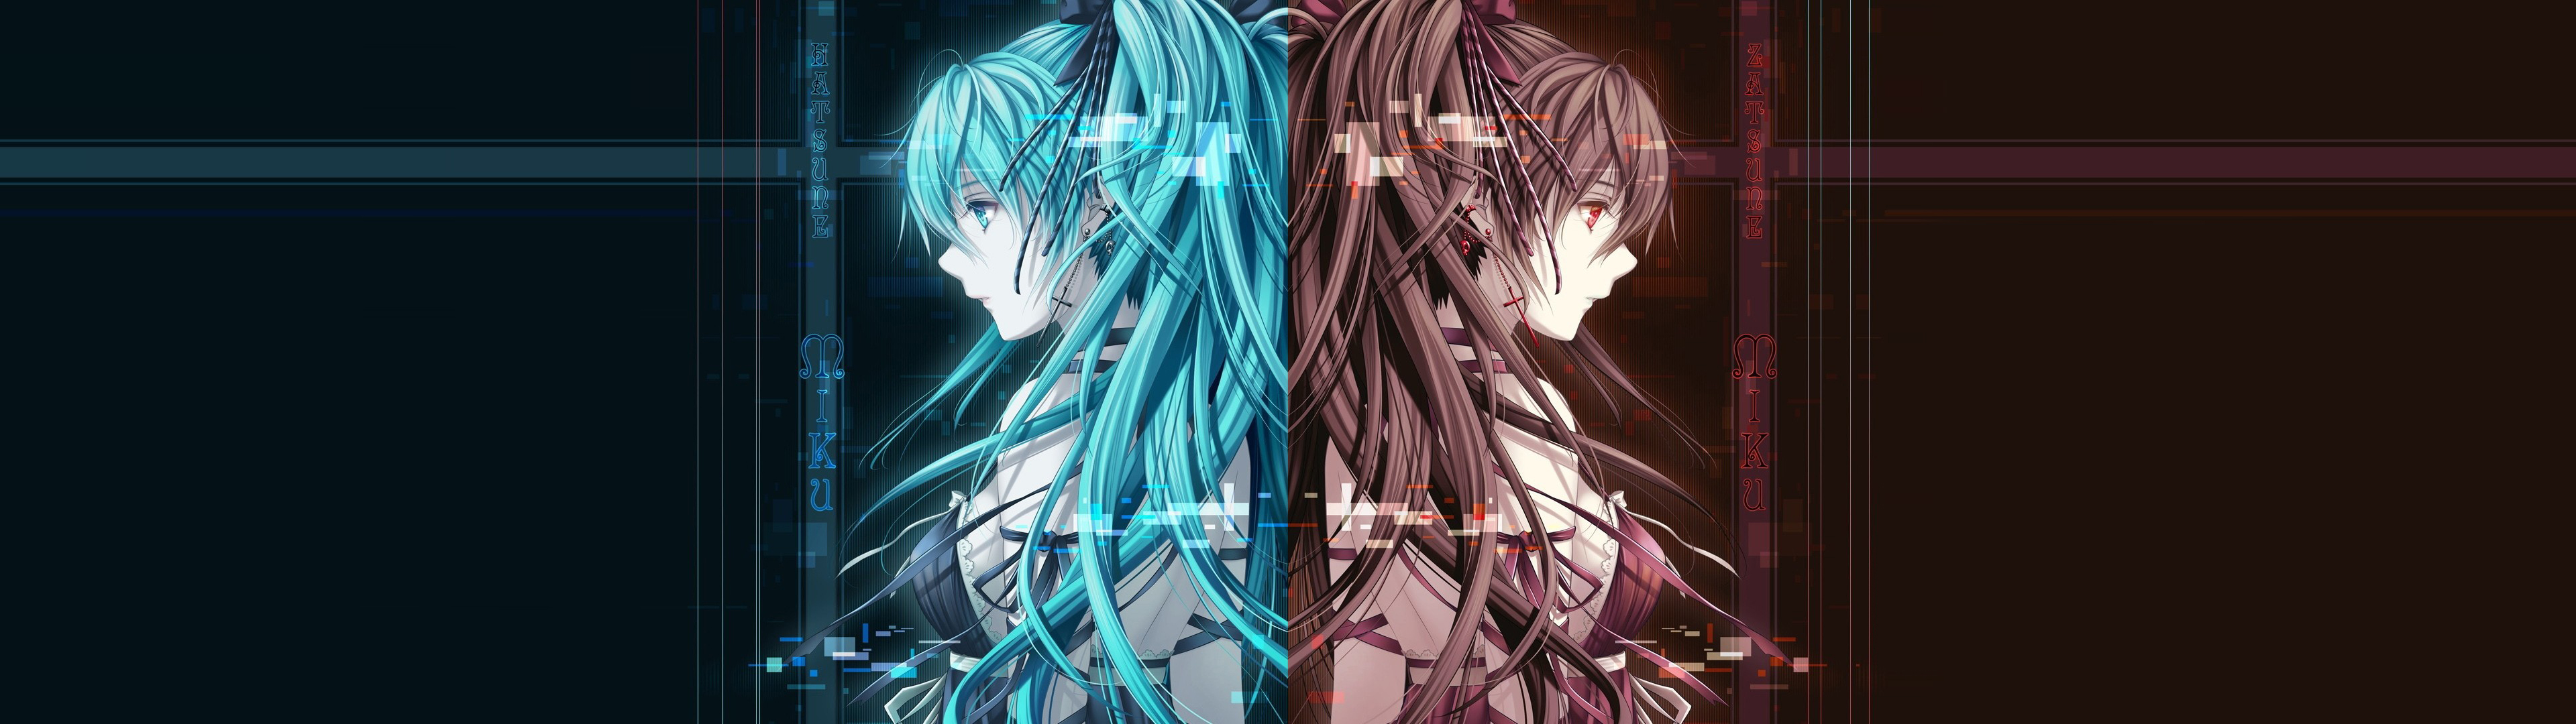 Dual Monitor Anime Wallpaper - WallpaperSafari